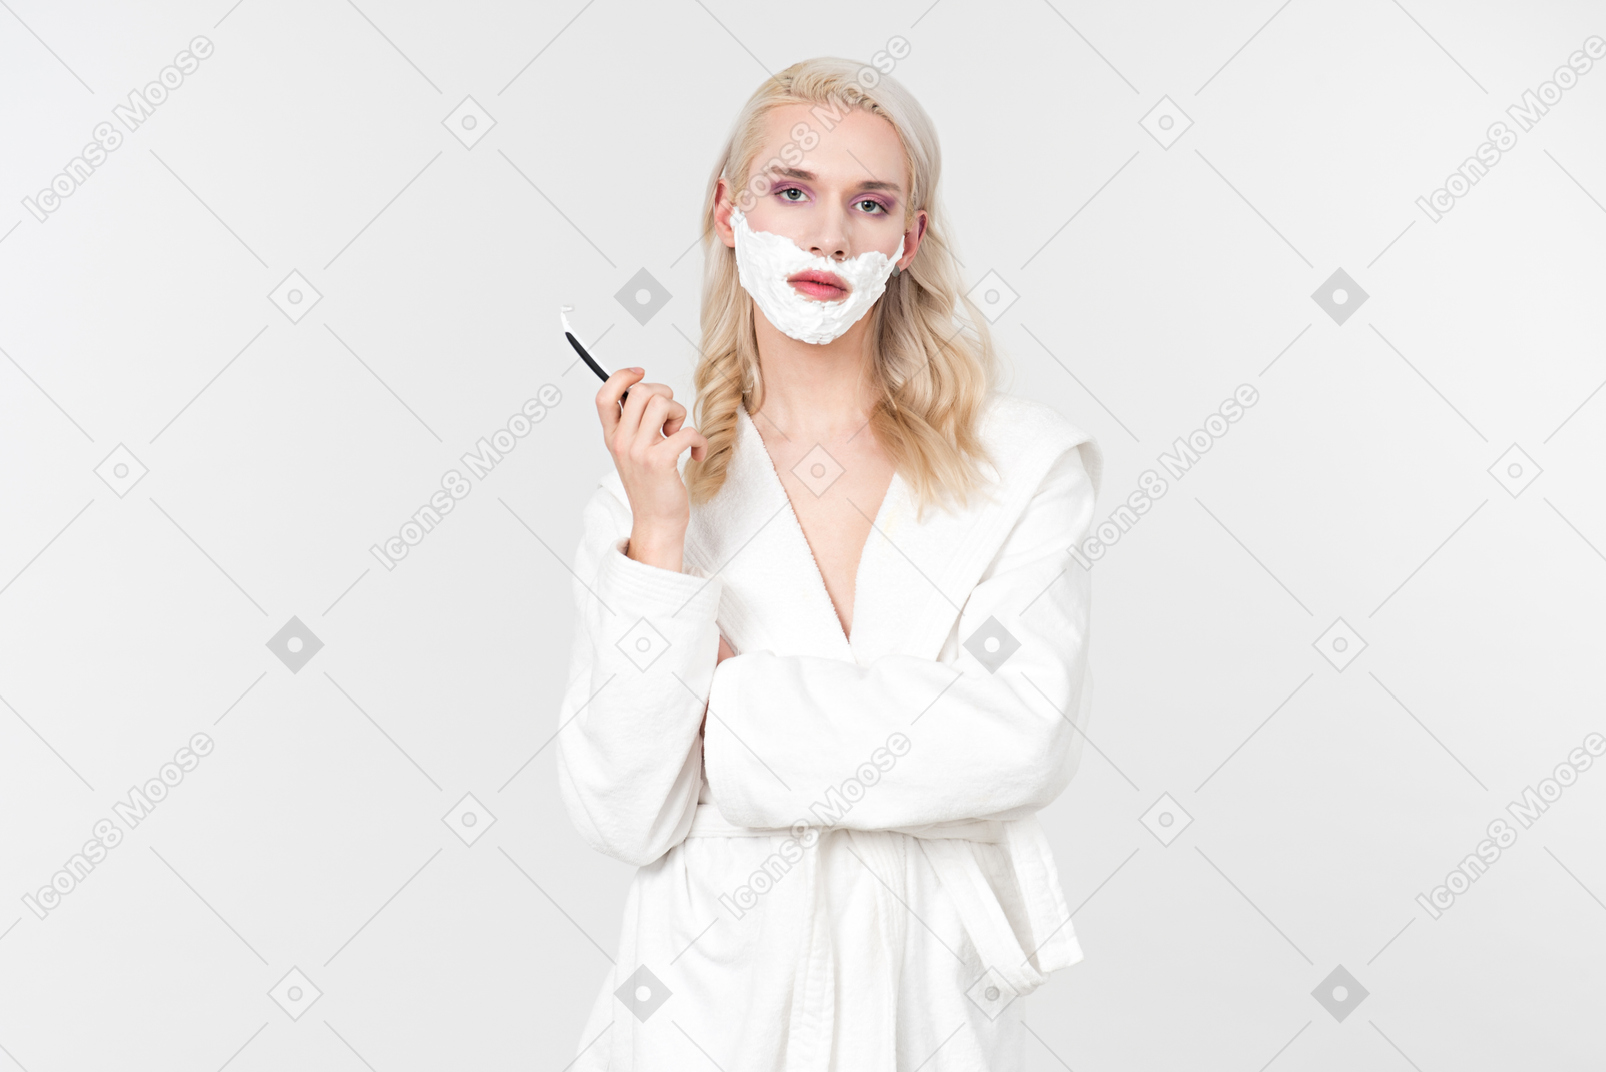 Un beau jeune homme aux cheveux blonds vêtu d'un peignoir blanc, en train de suivre sa routine de soins de beauté